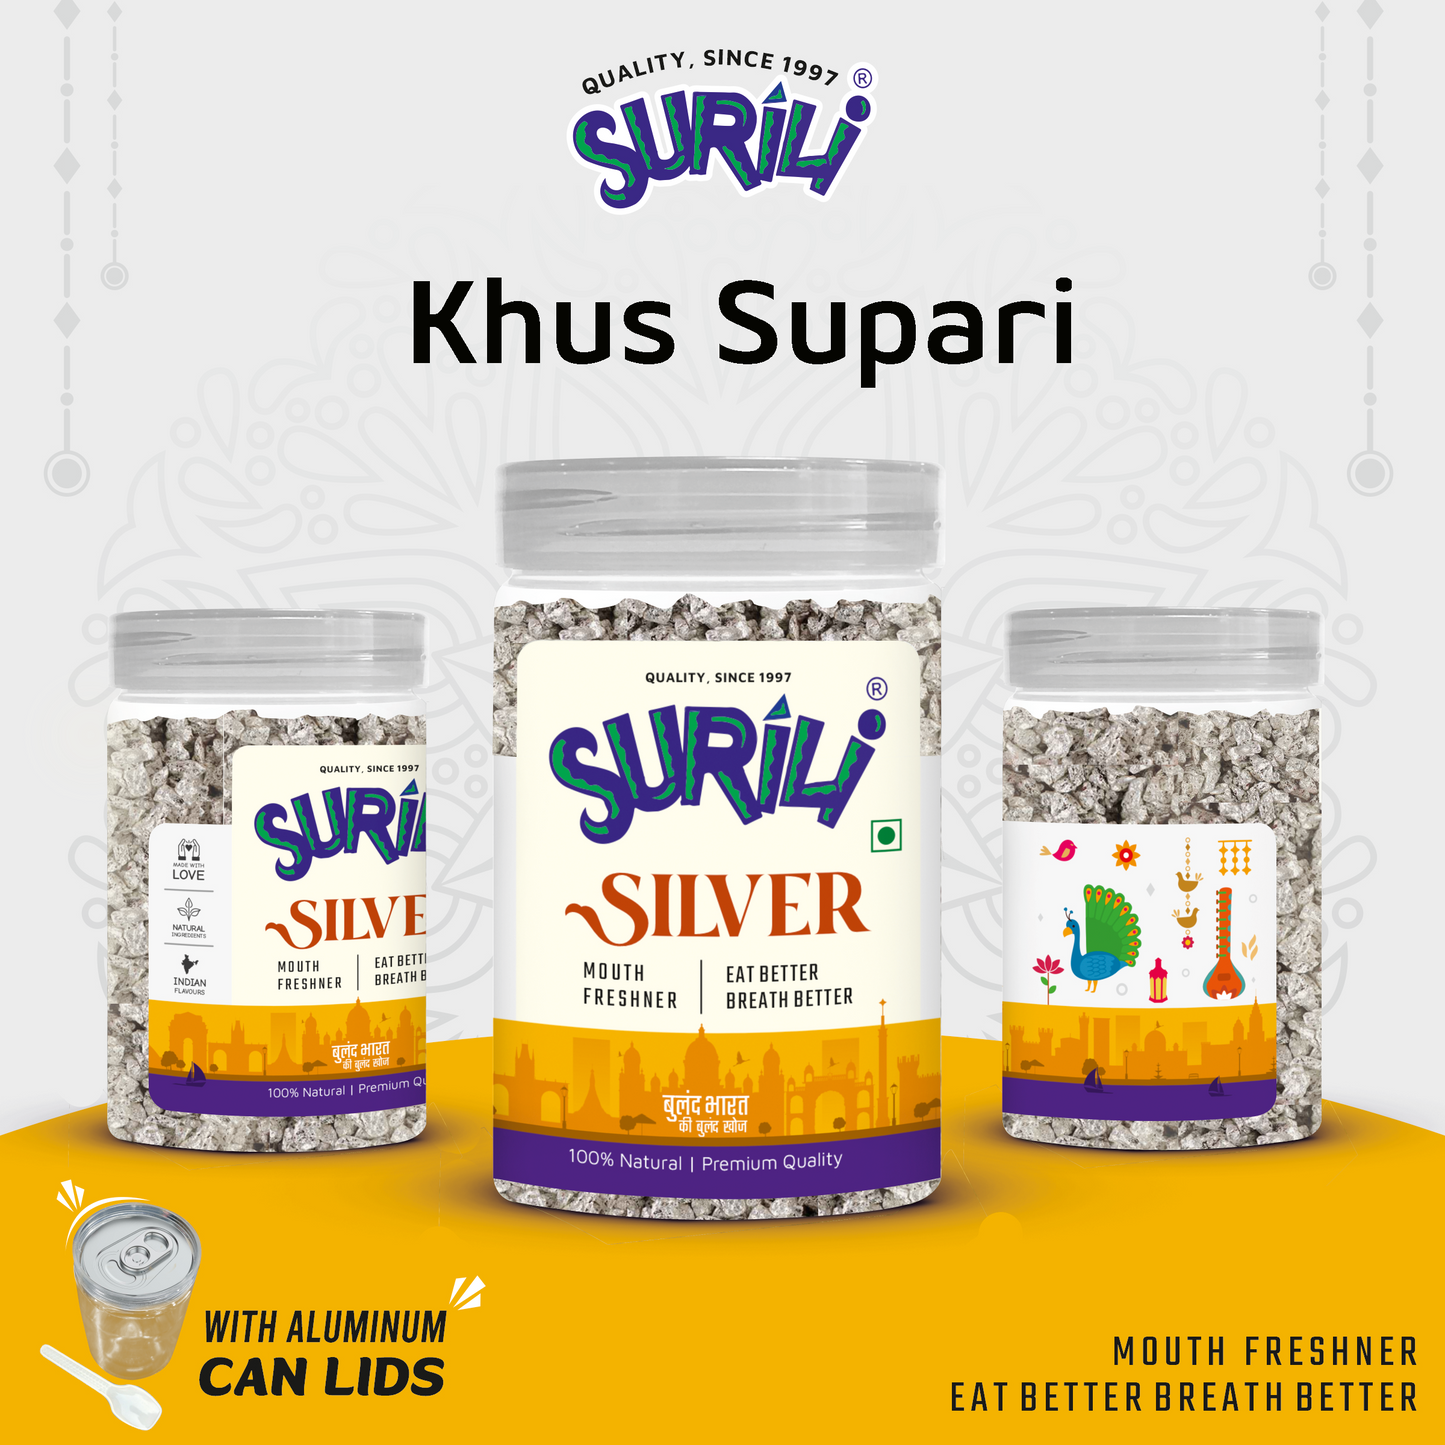 Khus Supari